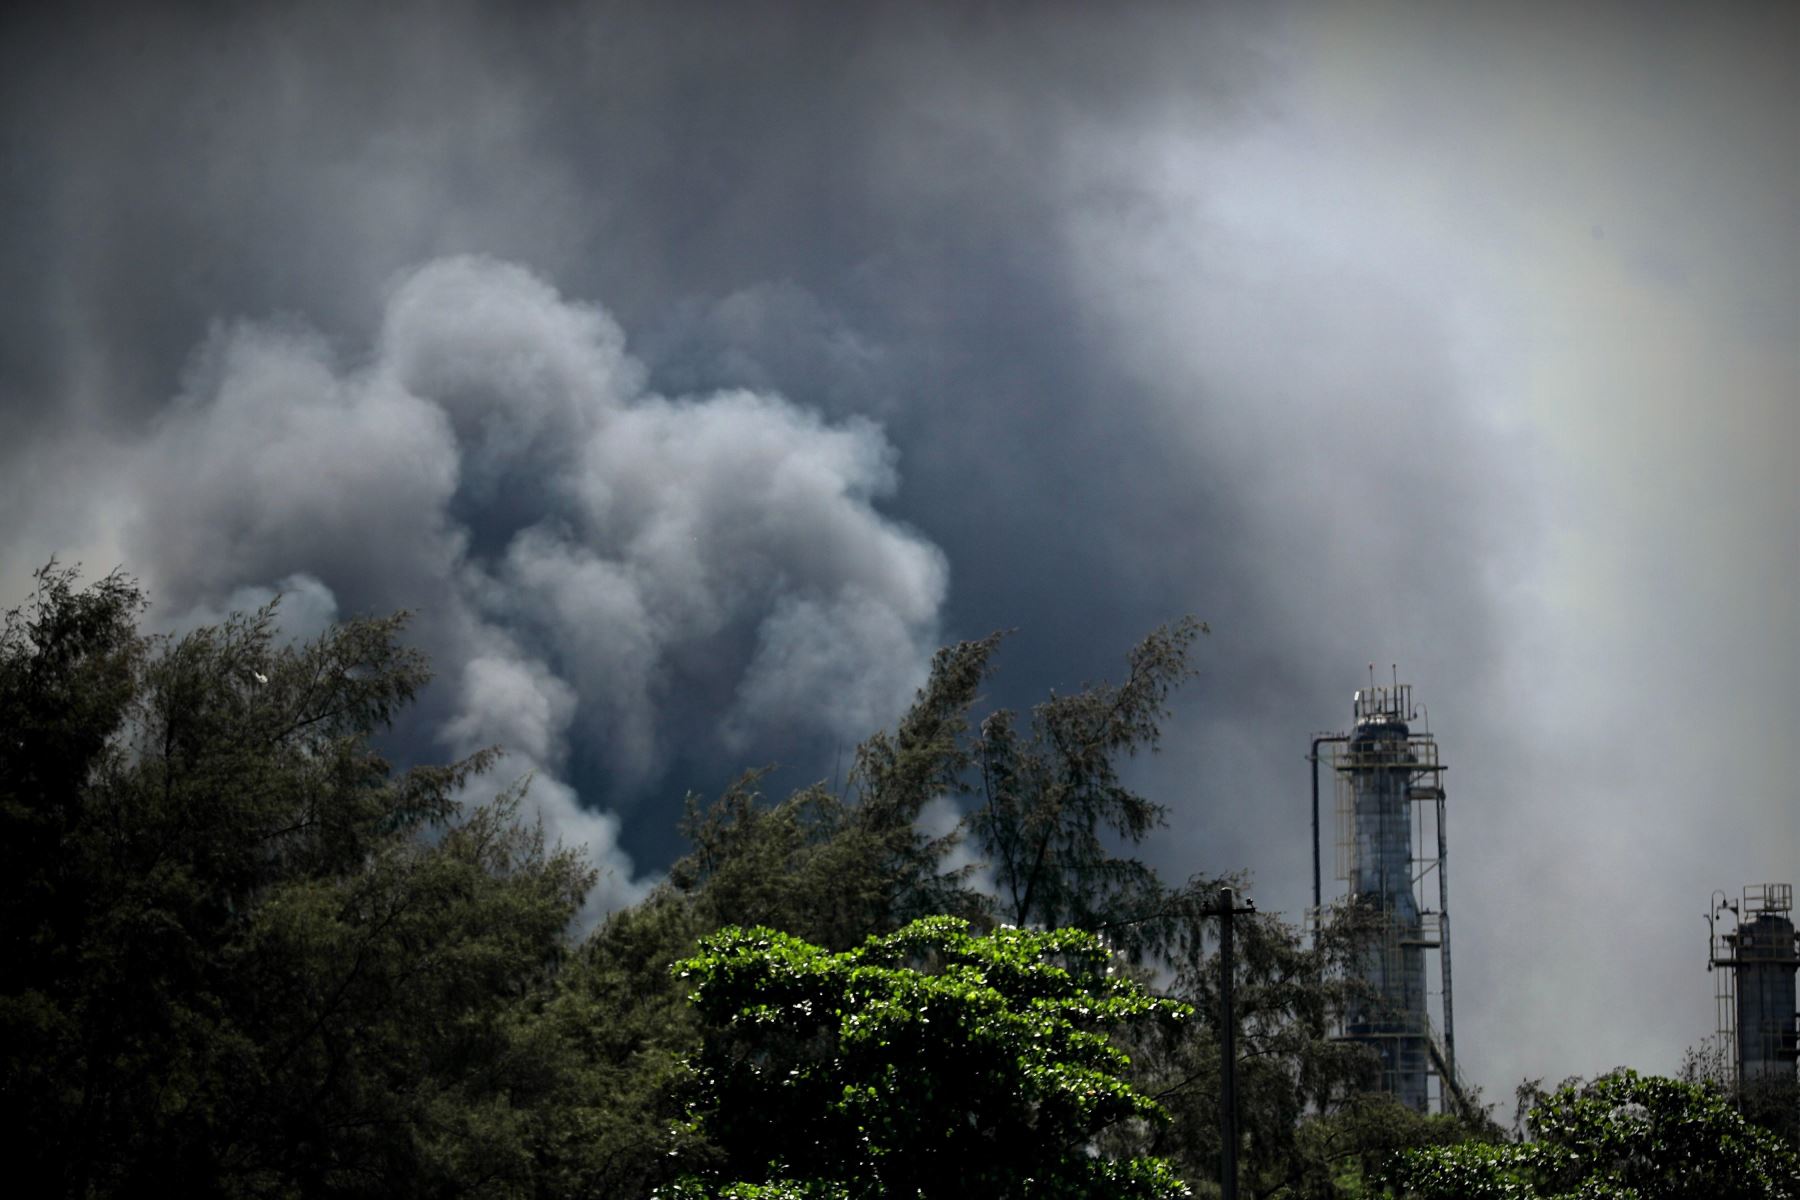 Fotografía del humo causado por el incendio en una refinería hoy, en Río de Janeiro (Brasil)  Foto: EFE